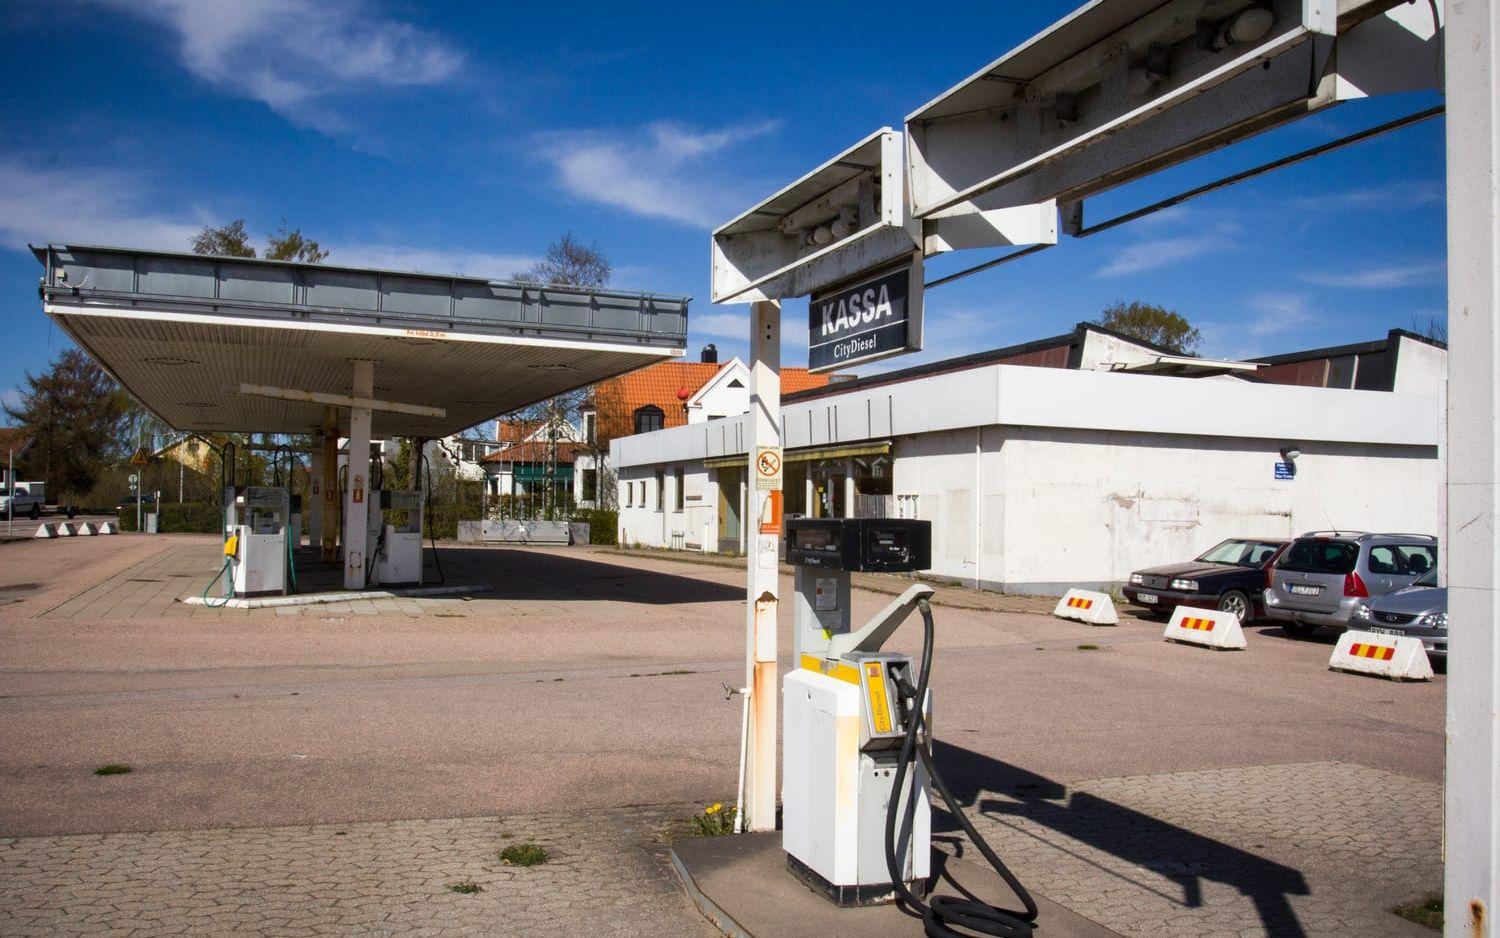 Ska efterbehandlas. Oljebolaget St1 är har dömts skyldigt att sanera dieselföroreningen på den gamla Shellmacken på Ängelholmsvägen i Laholm. Bild: Jonatan Gernes